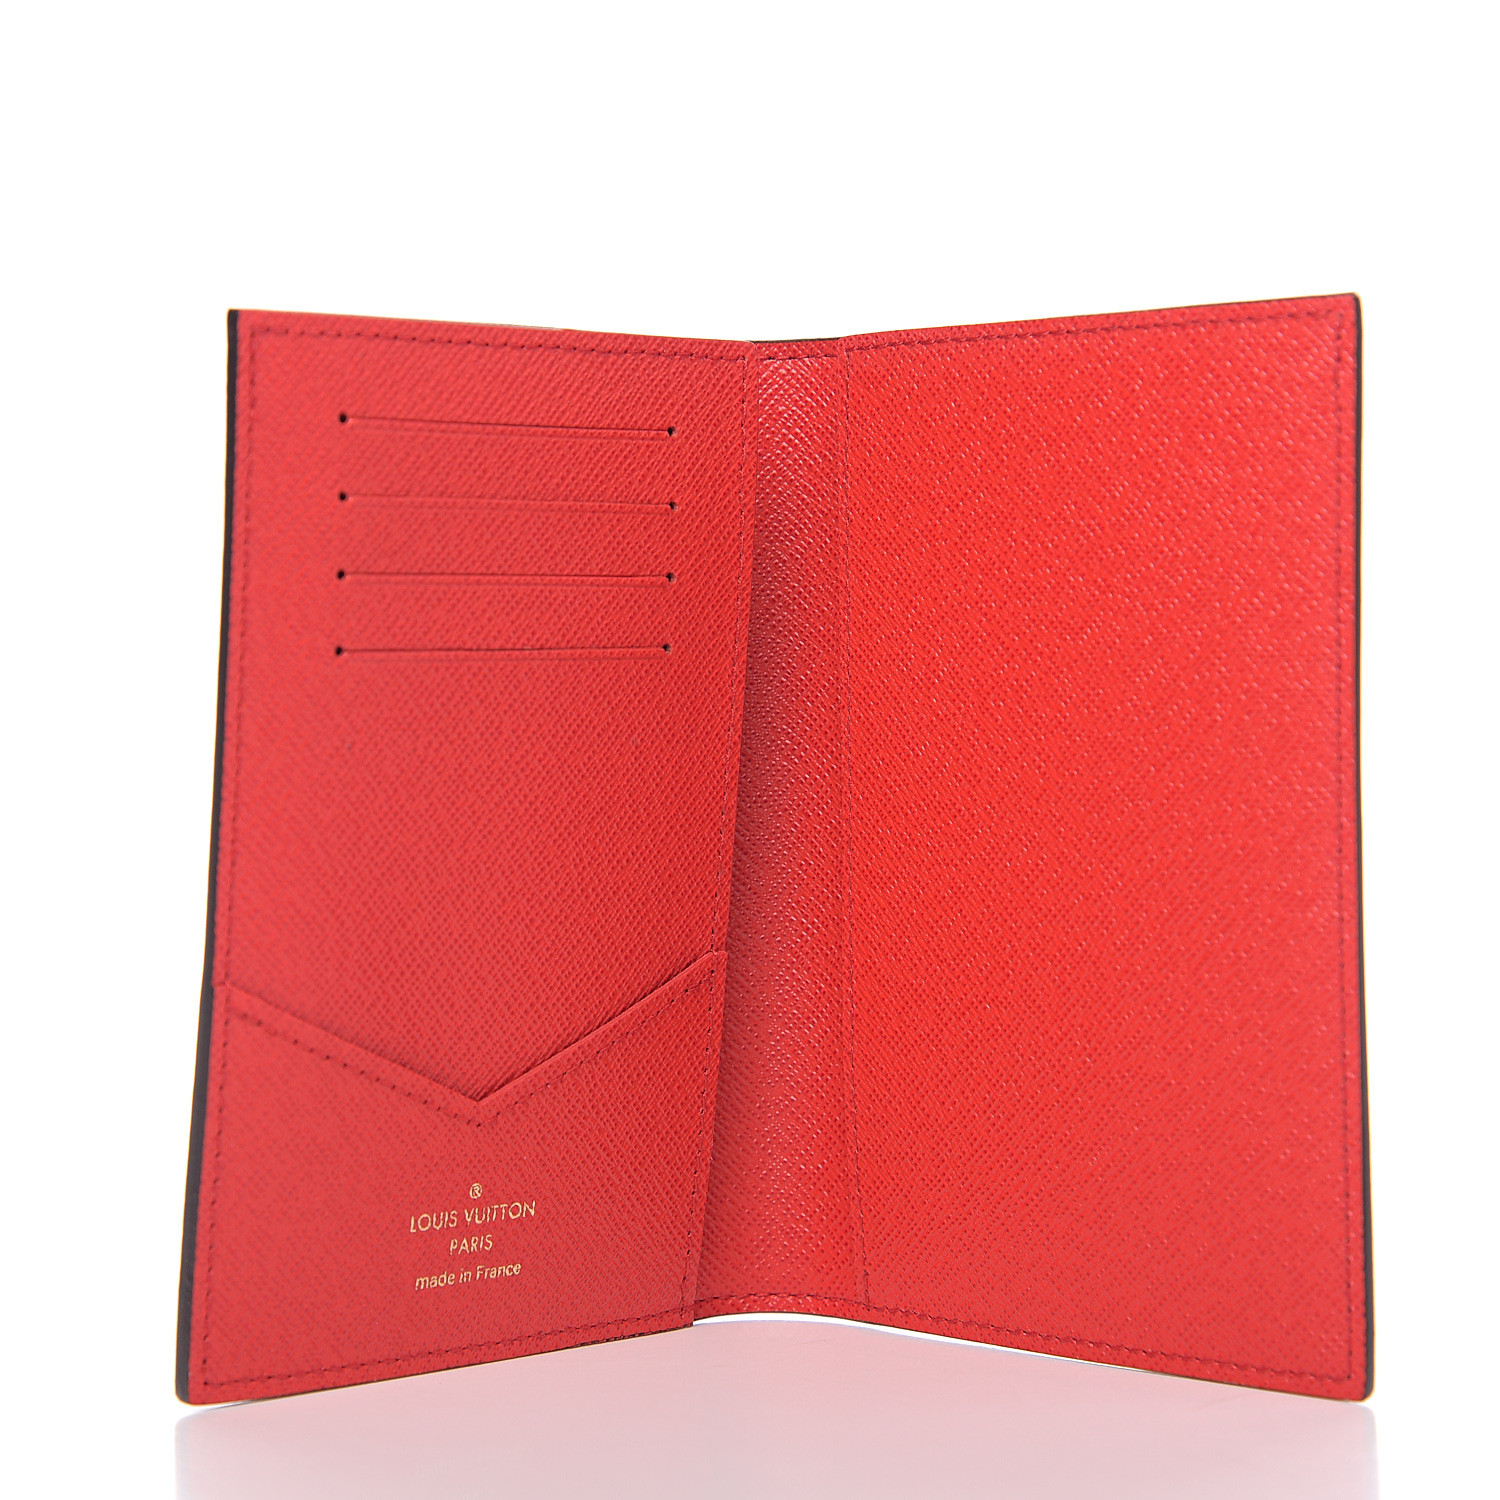 LOUIS VUITTON Monogram Vivienne Paris Xmas Passport Cover Rouge 572485